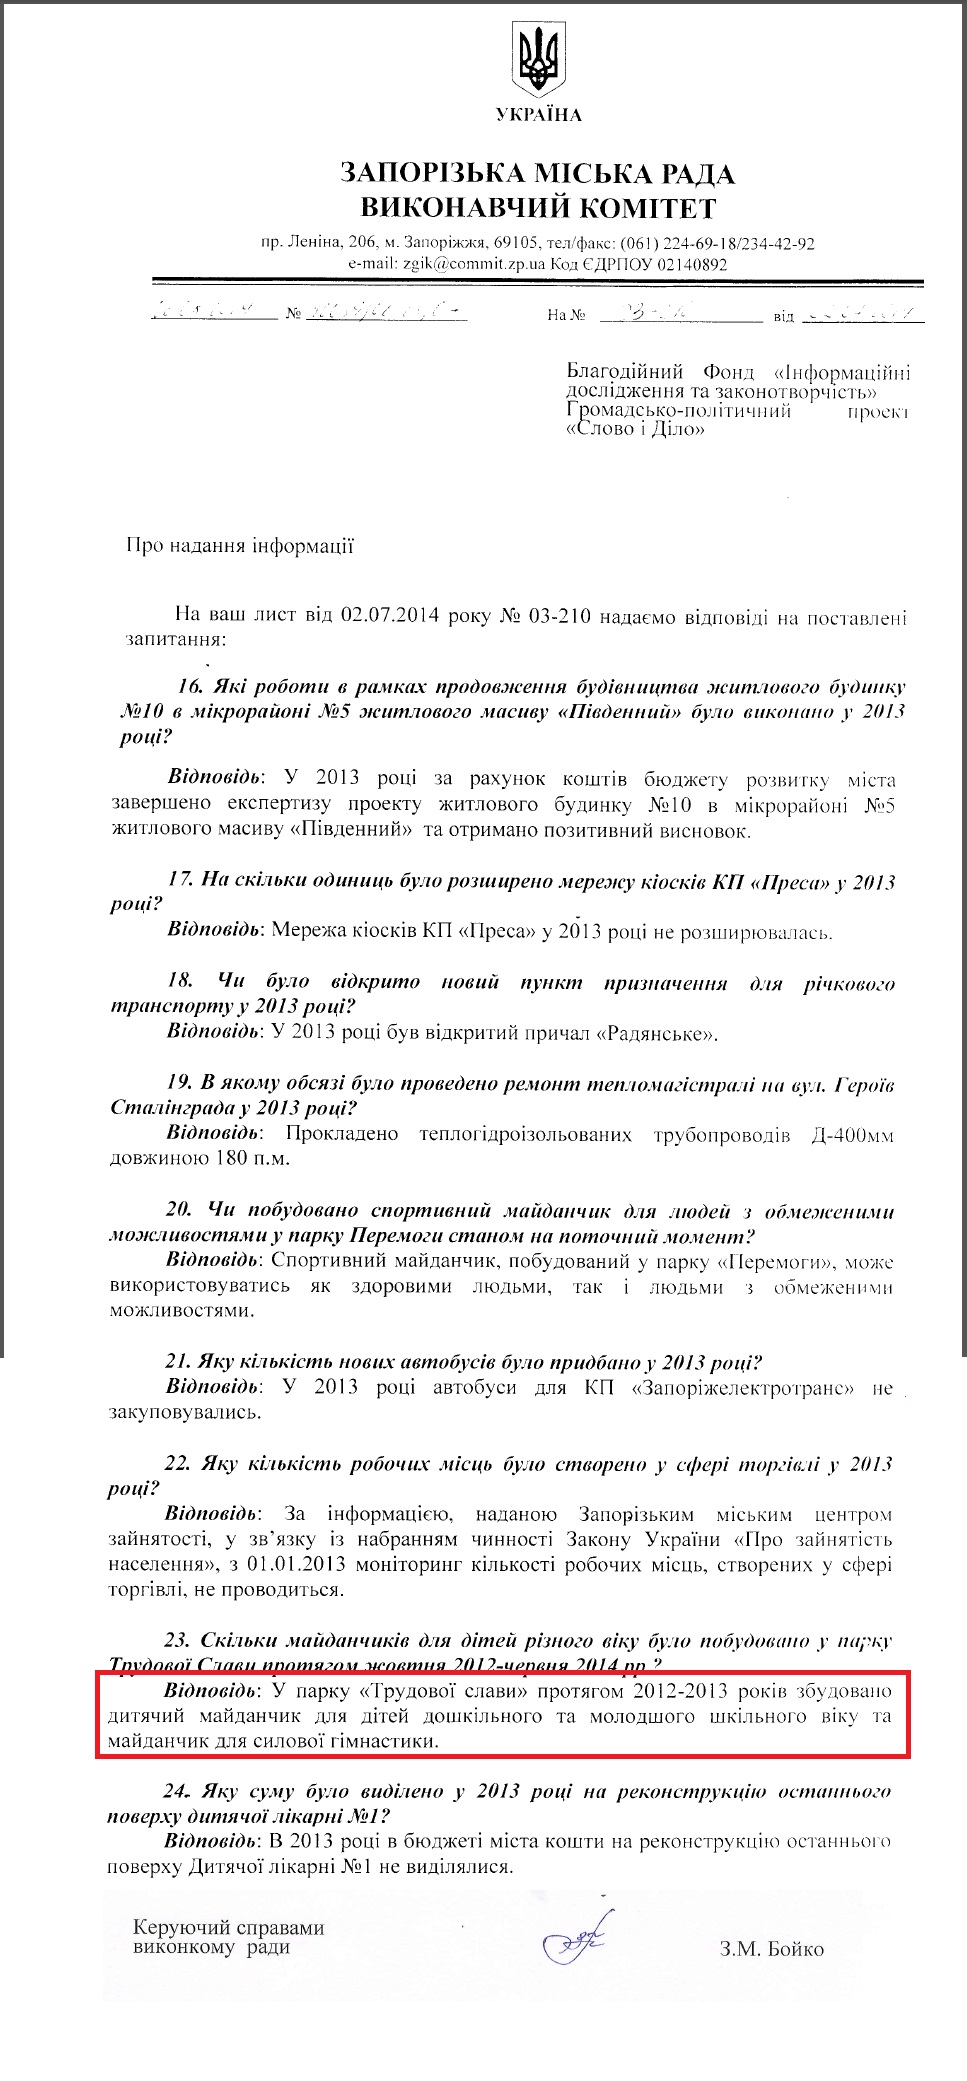 Лист керуючого справами виконкому Запорізької міськради З.М.Бойка